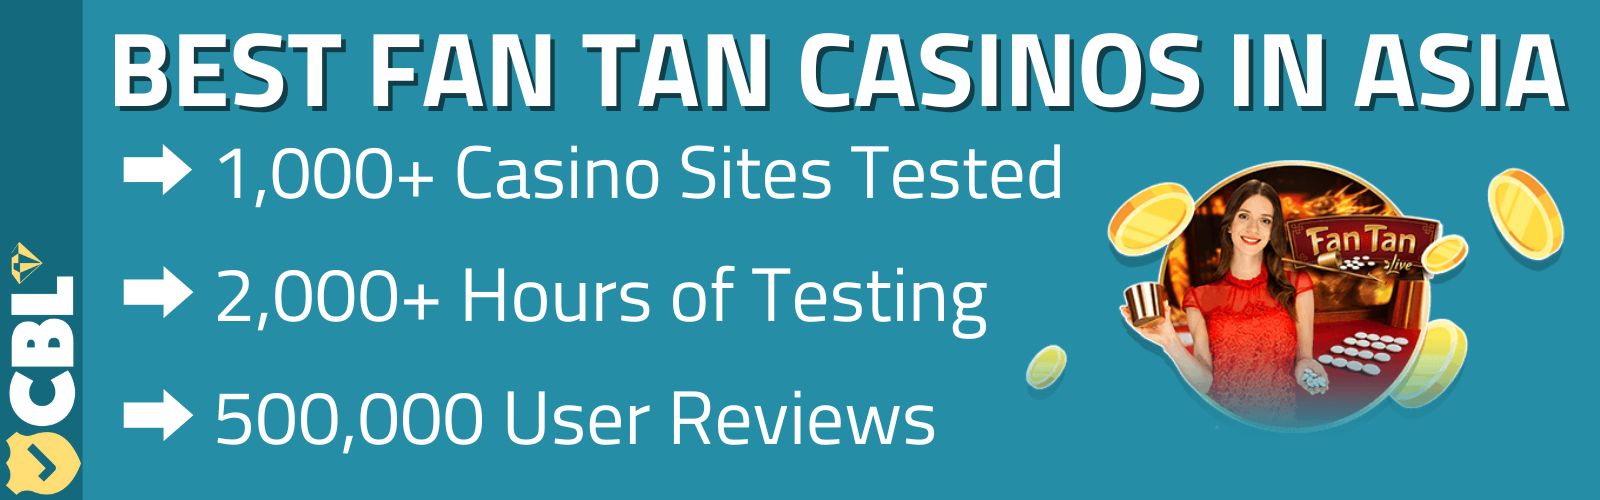 Best Fan tan casino sites in Asia